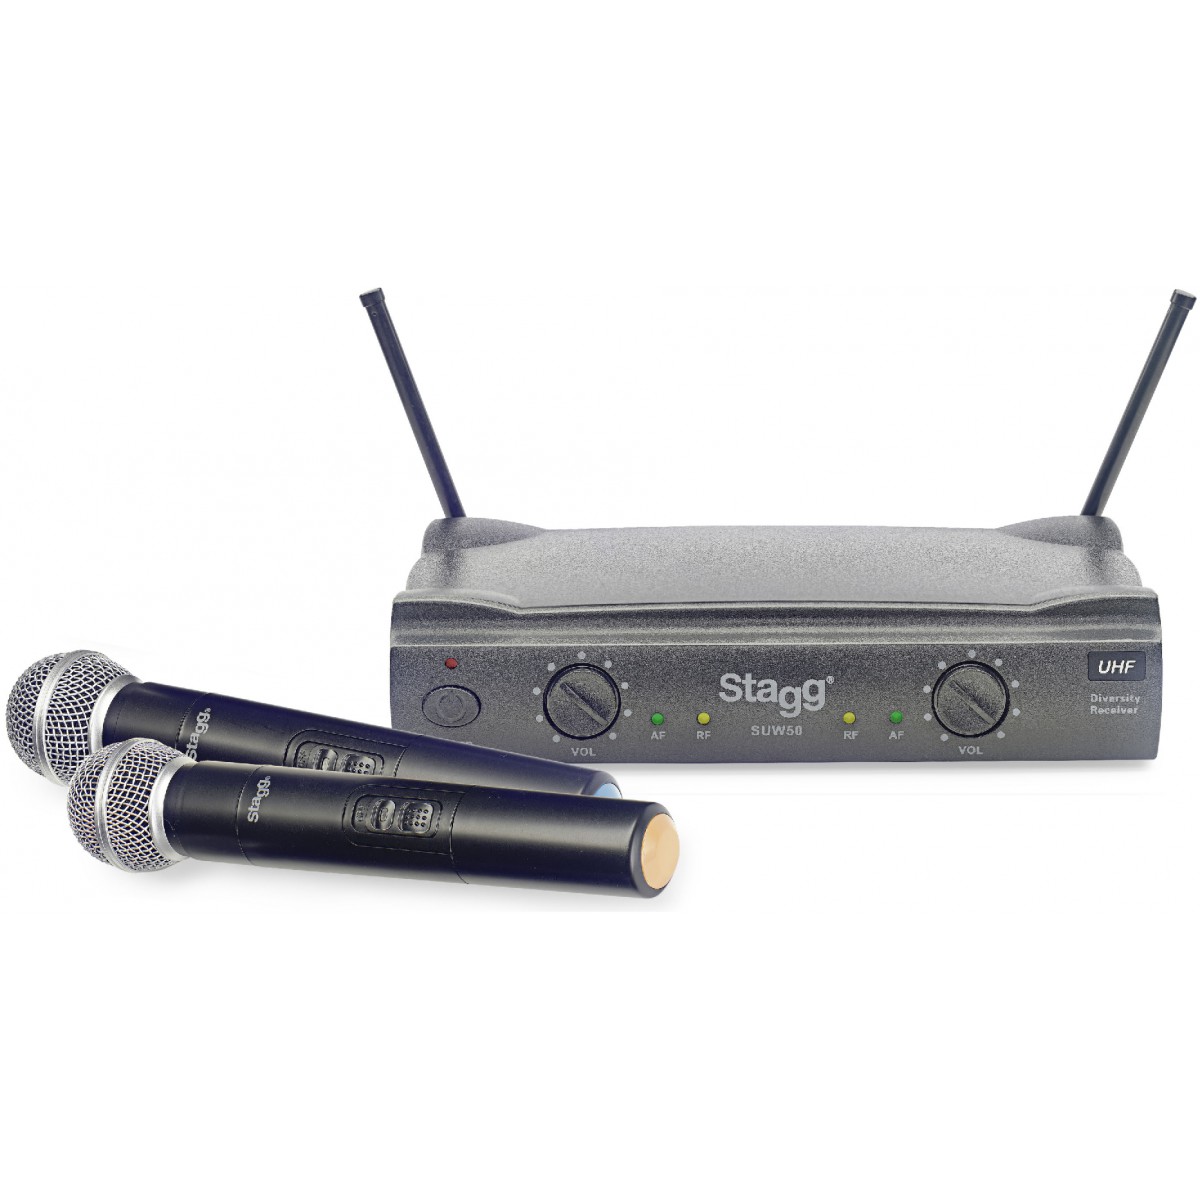 Fotografie Stagg SUW 50 MM FH, UHF mikrofonní set 2 kanálový, 2x ruční mikrofon